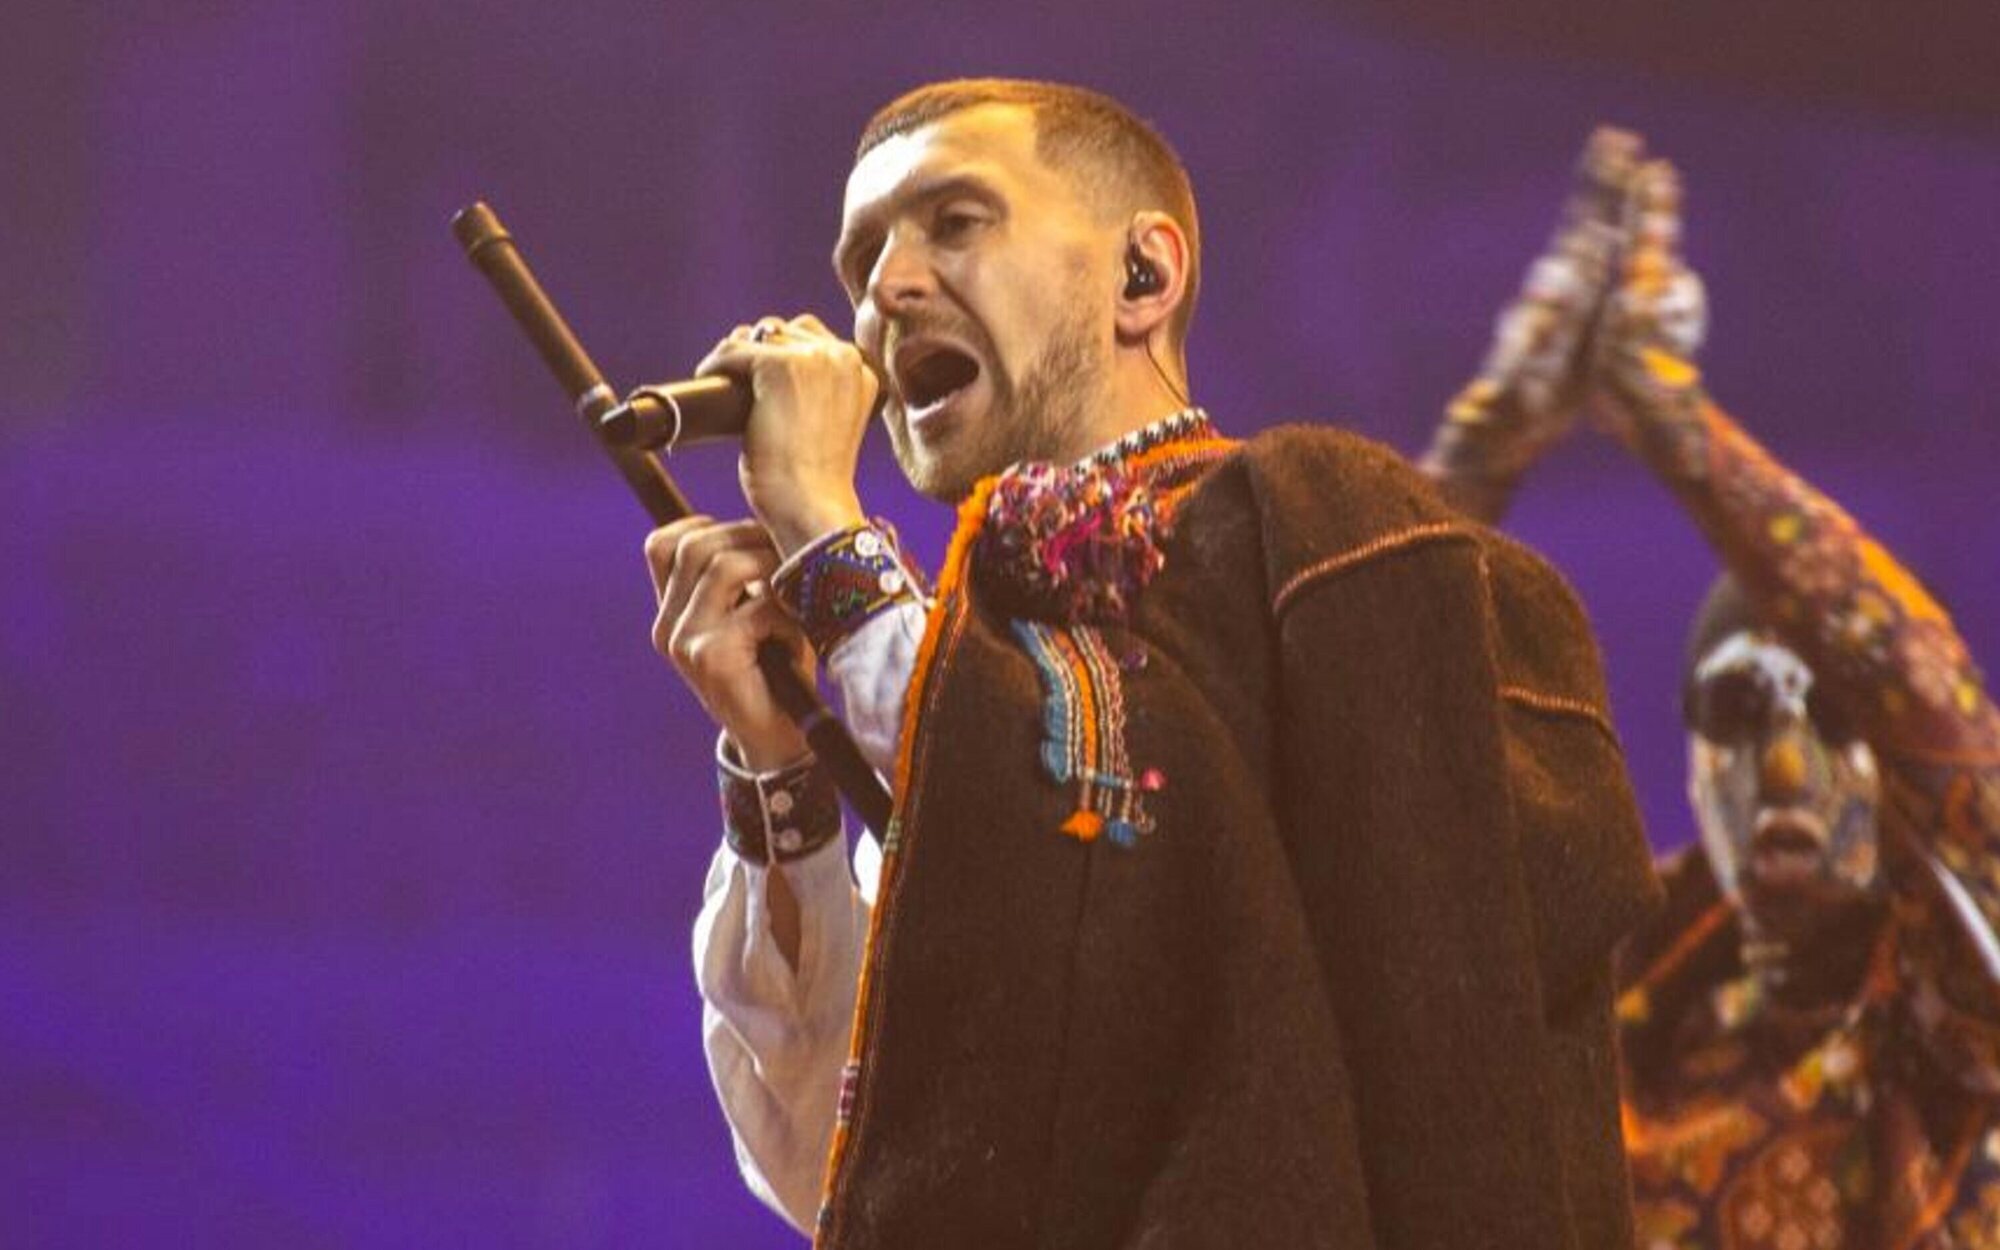 Ucrania gana Eurovisión 2022 con "Stefania" de Kalush Orchestra